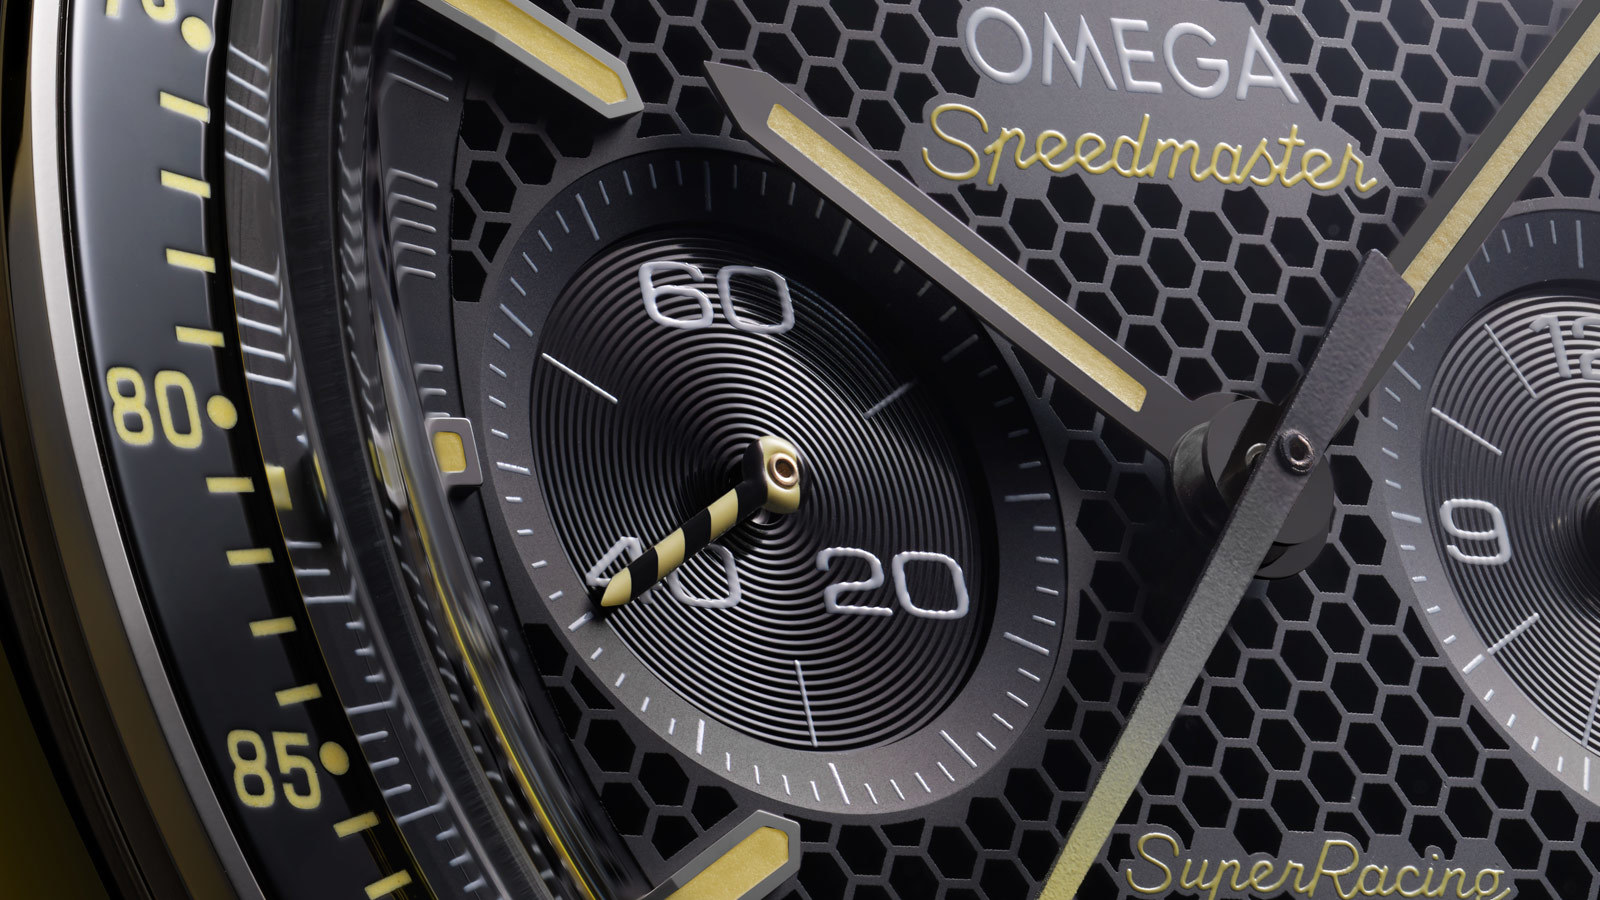 Omega Speedmaster Super Racing 329.30.44.51.01.003 Detalle segundero